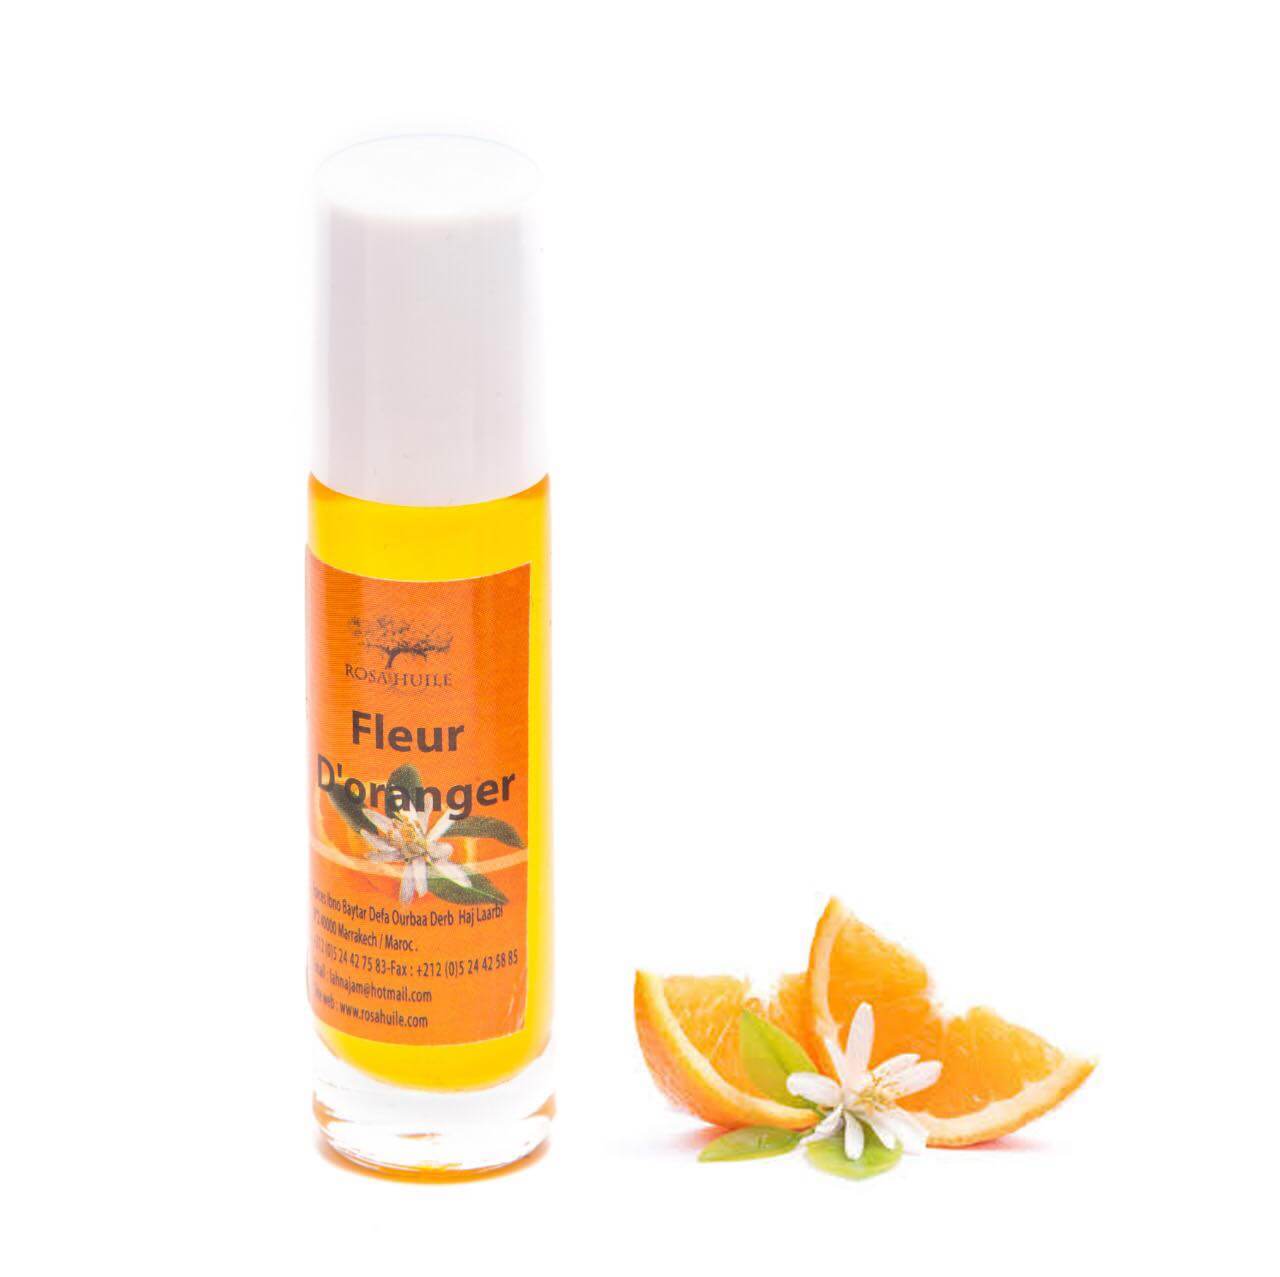 Organic Orange Blossom Essential Oil